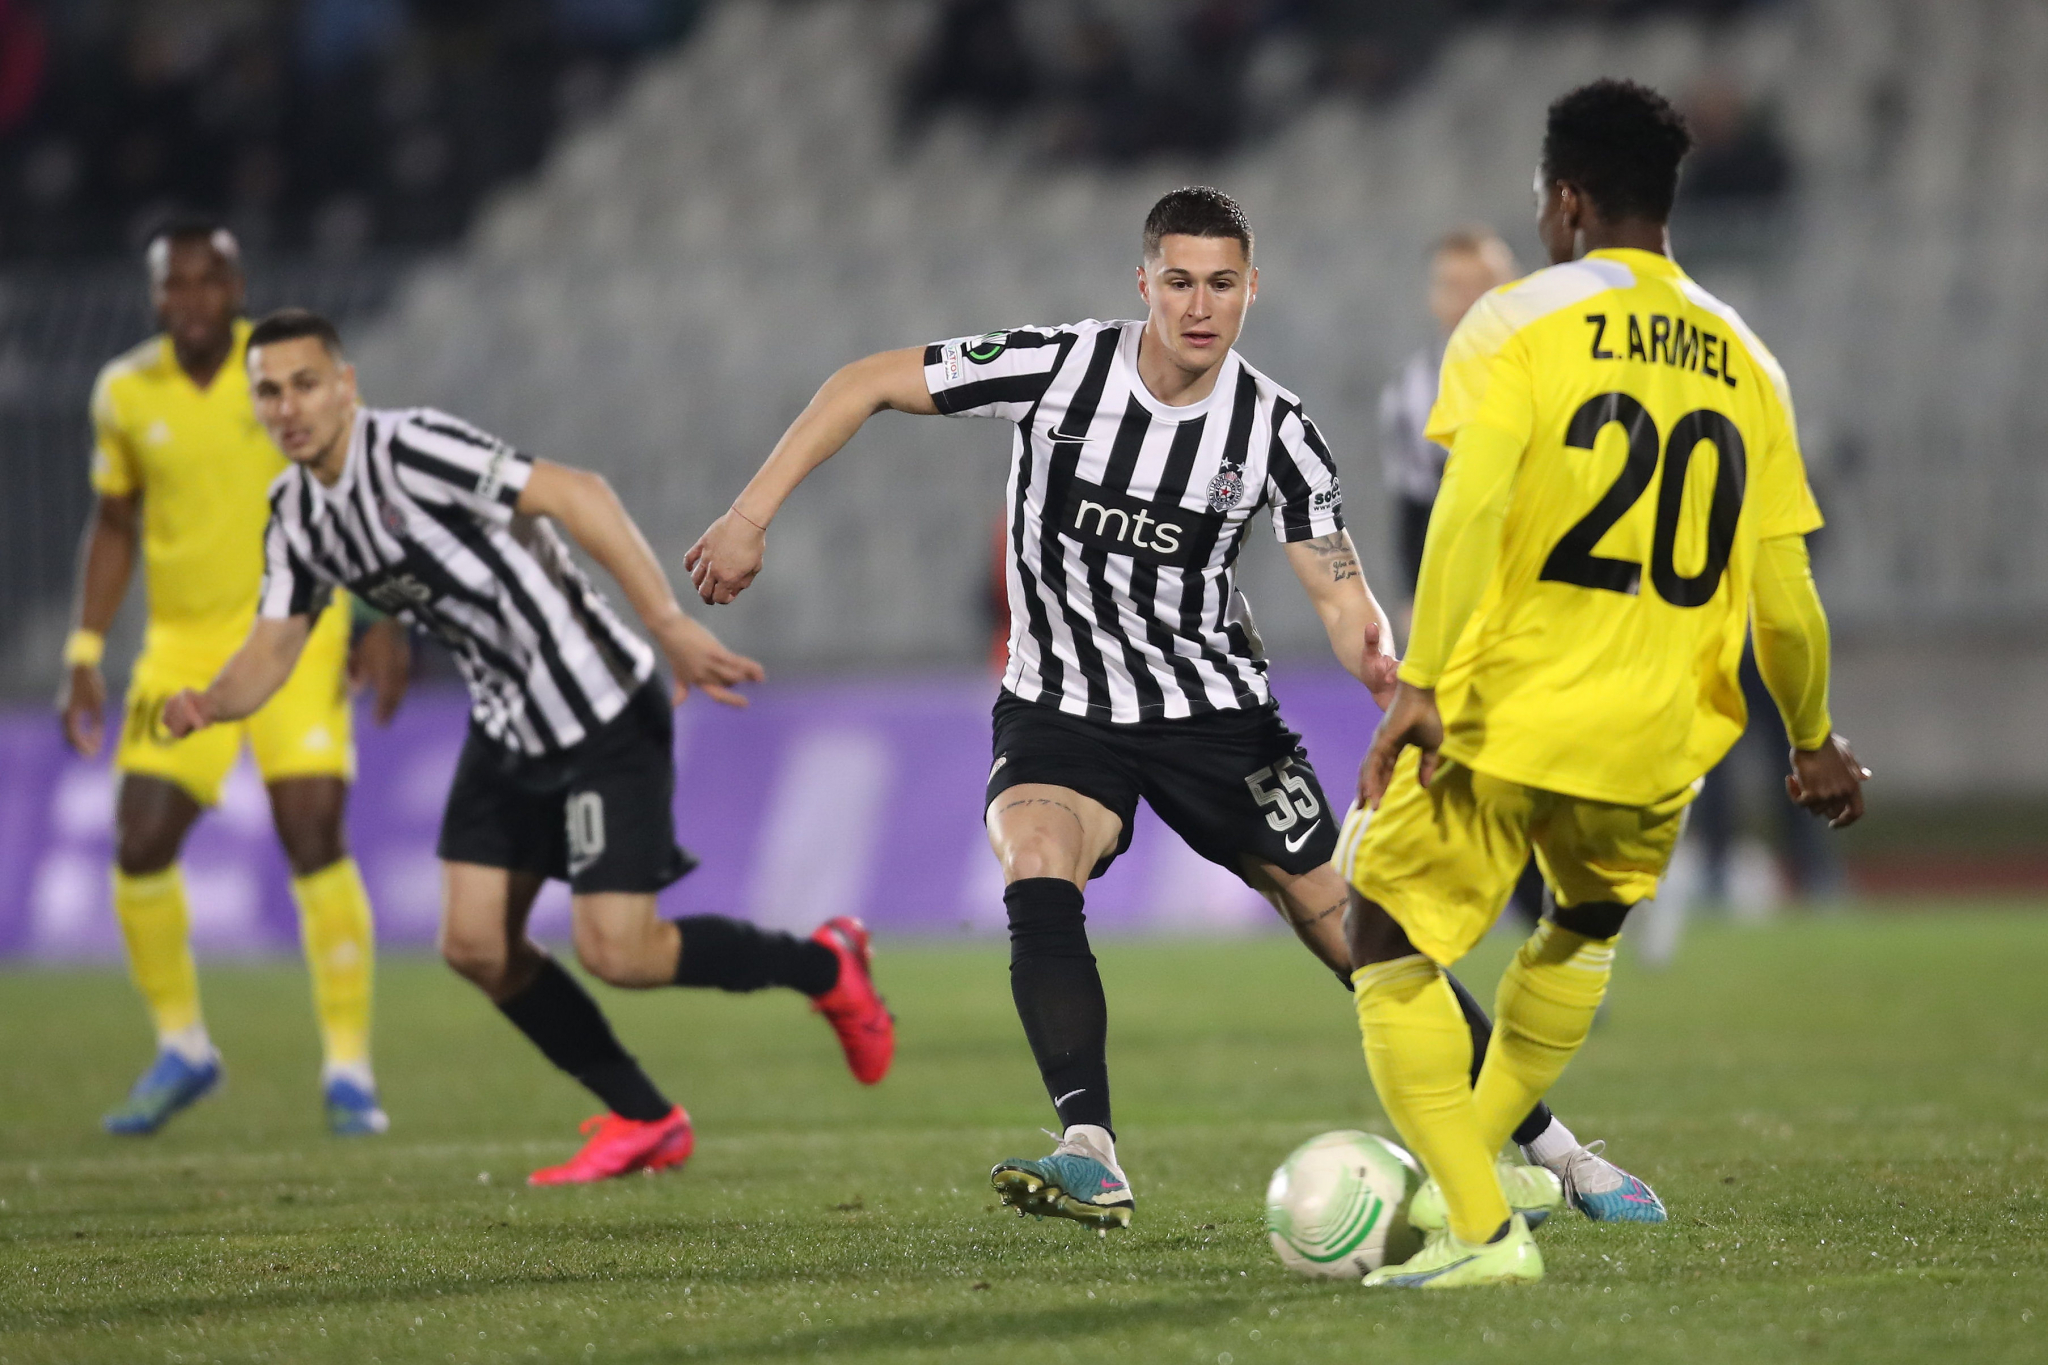 CRNO-BELO ZBOGOM EVROPI Partizan prokockao prednost iz Moldavije, Šerif postigao tri gola u Humskoj i prošao u osminu finala (VIDEO)